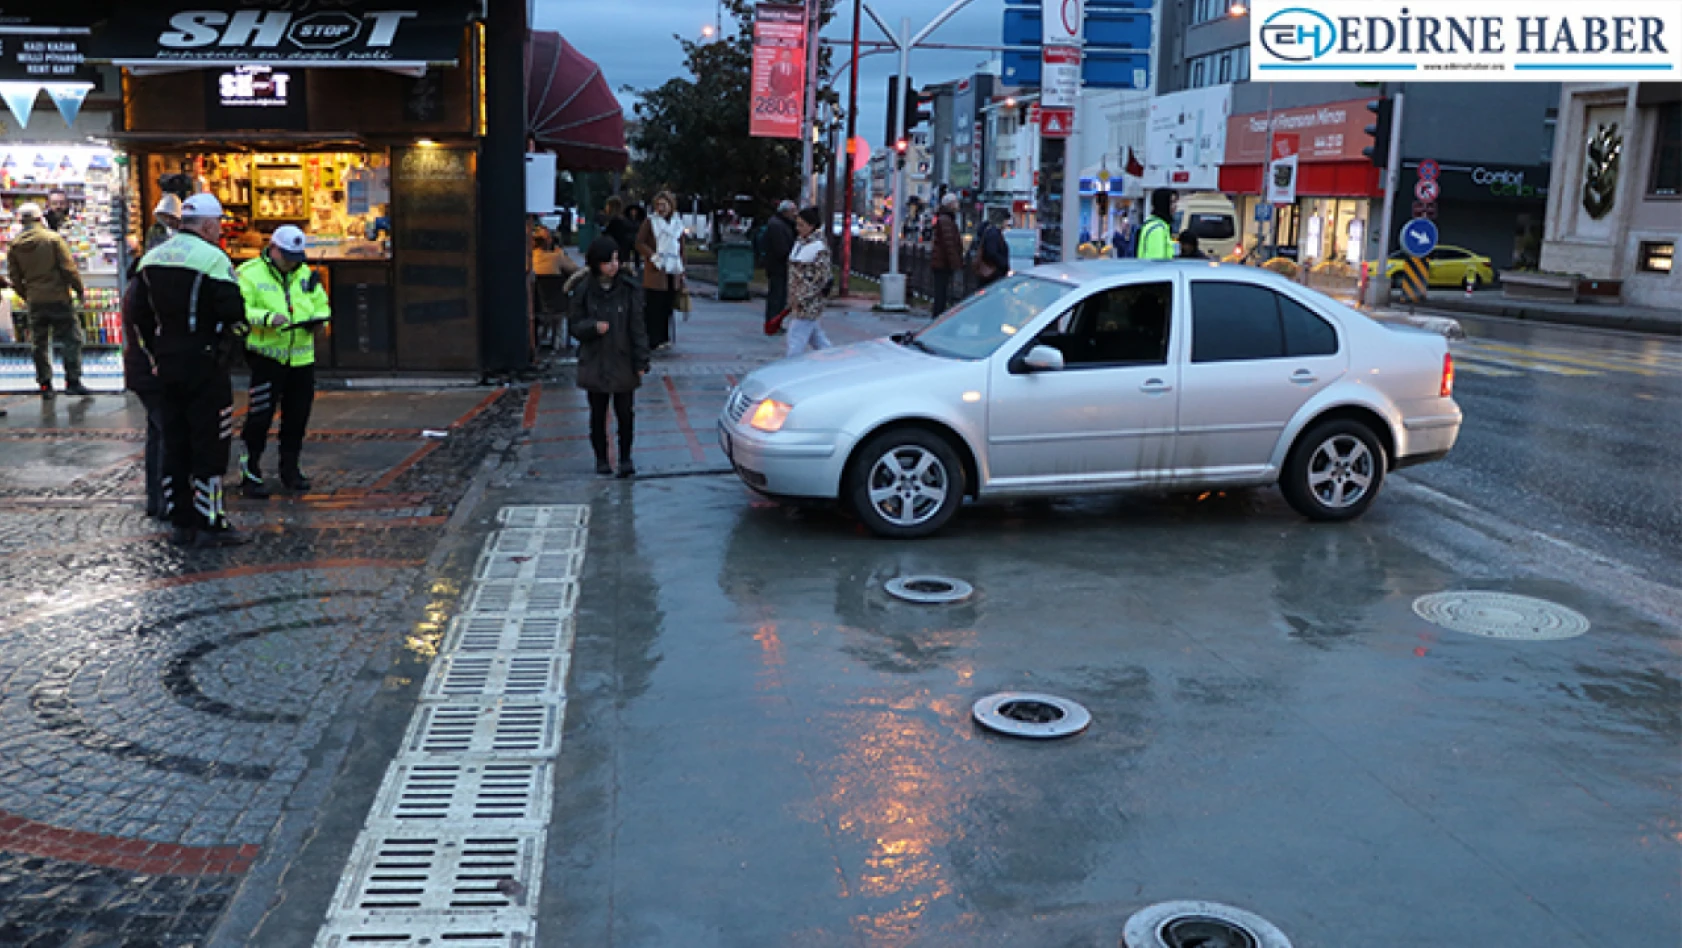 Edirne'de bariyere takılan otomobil çekiciyle kurtarıldı